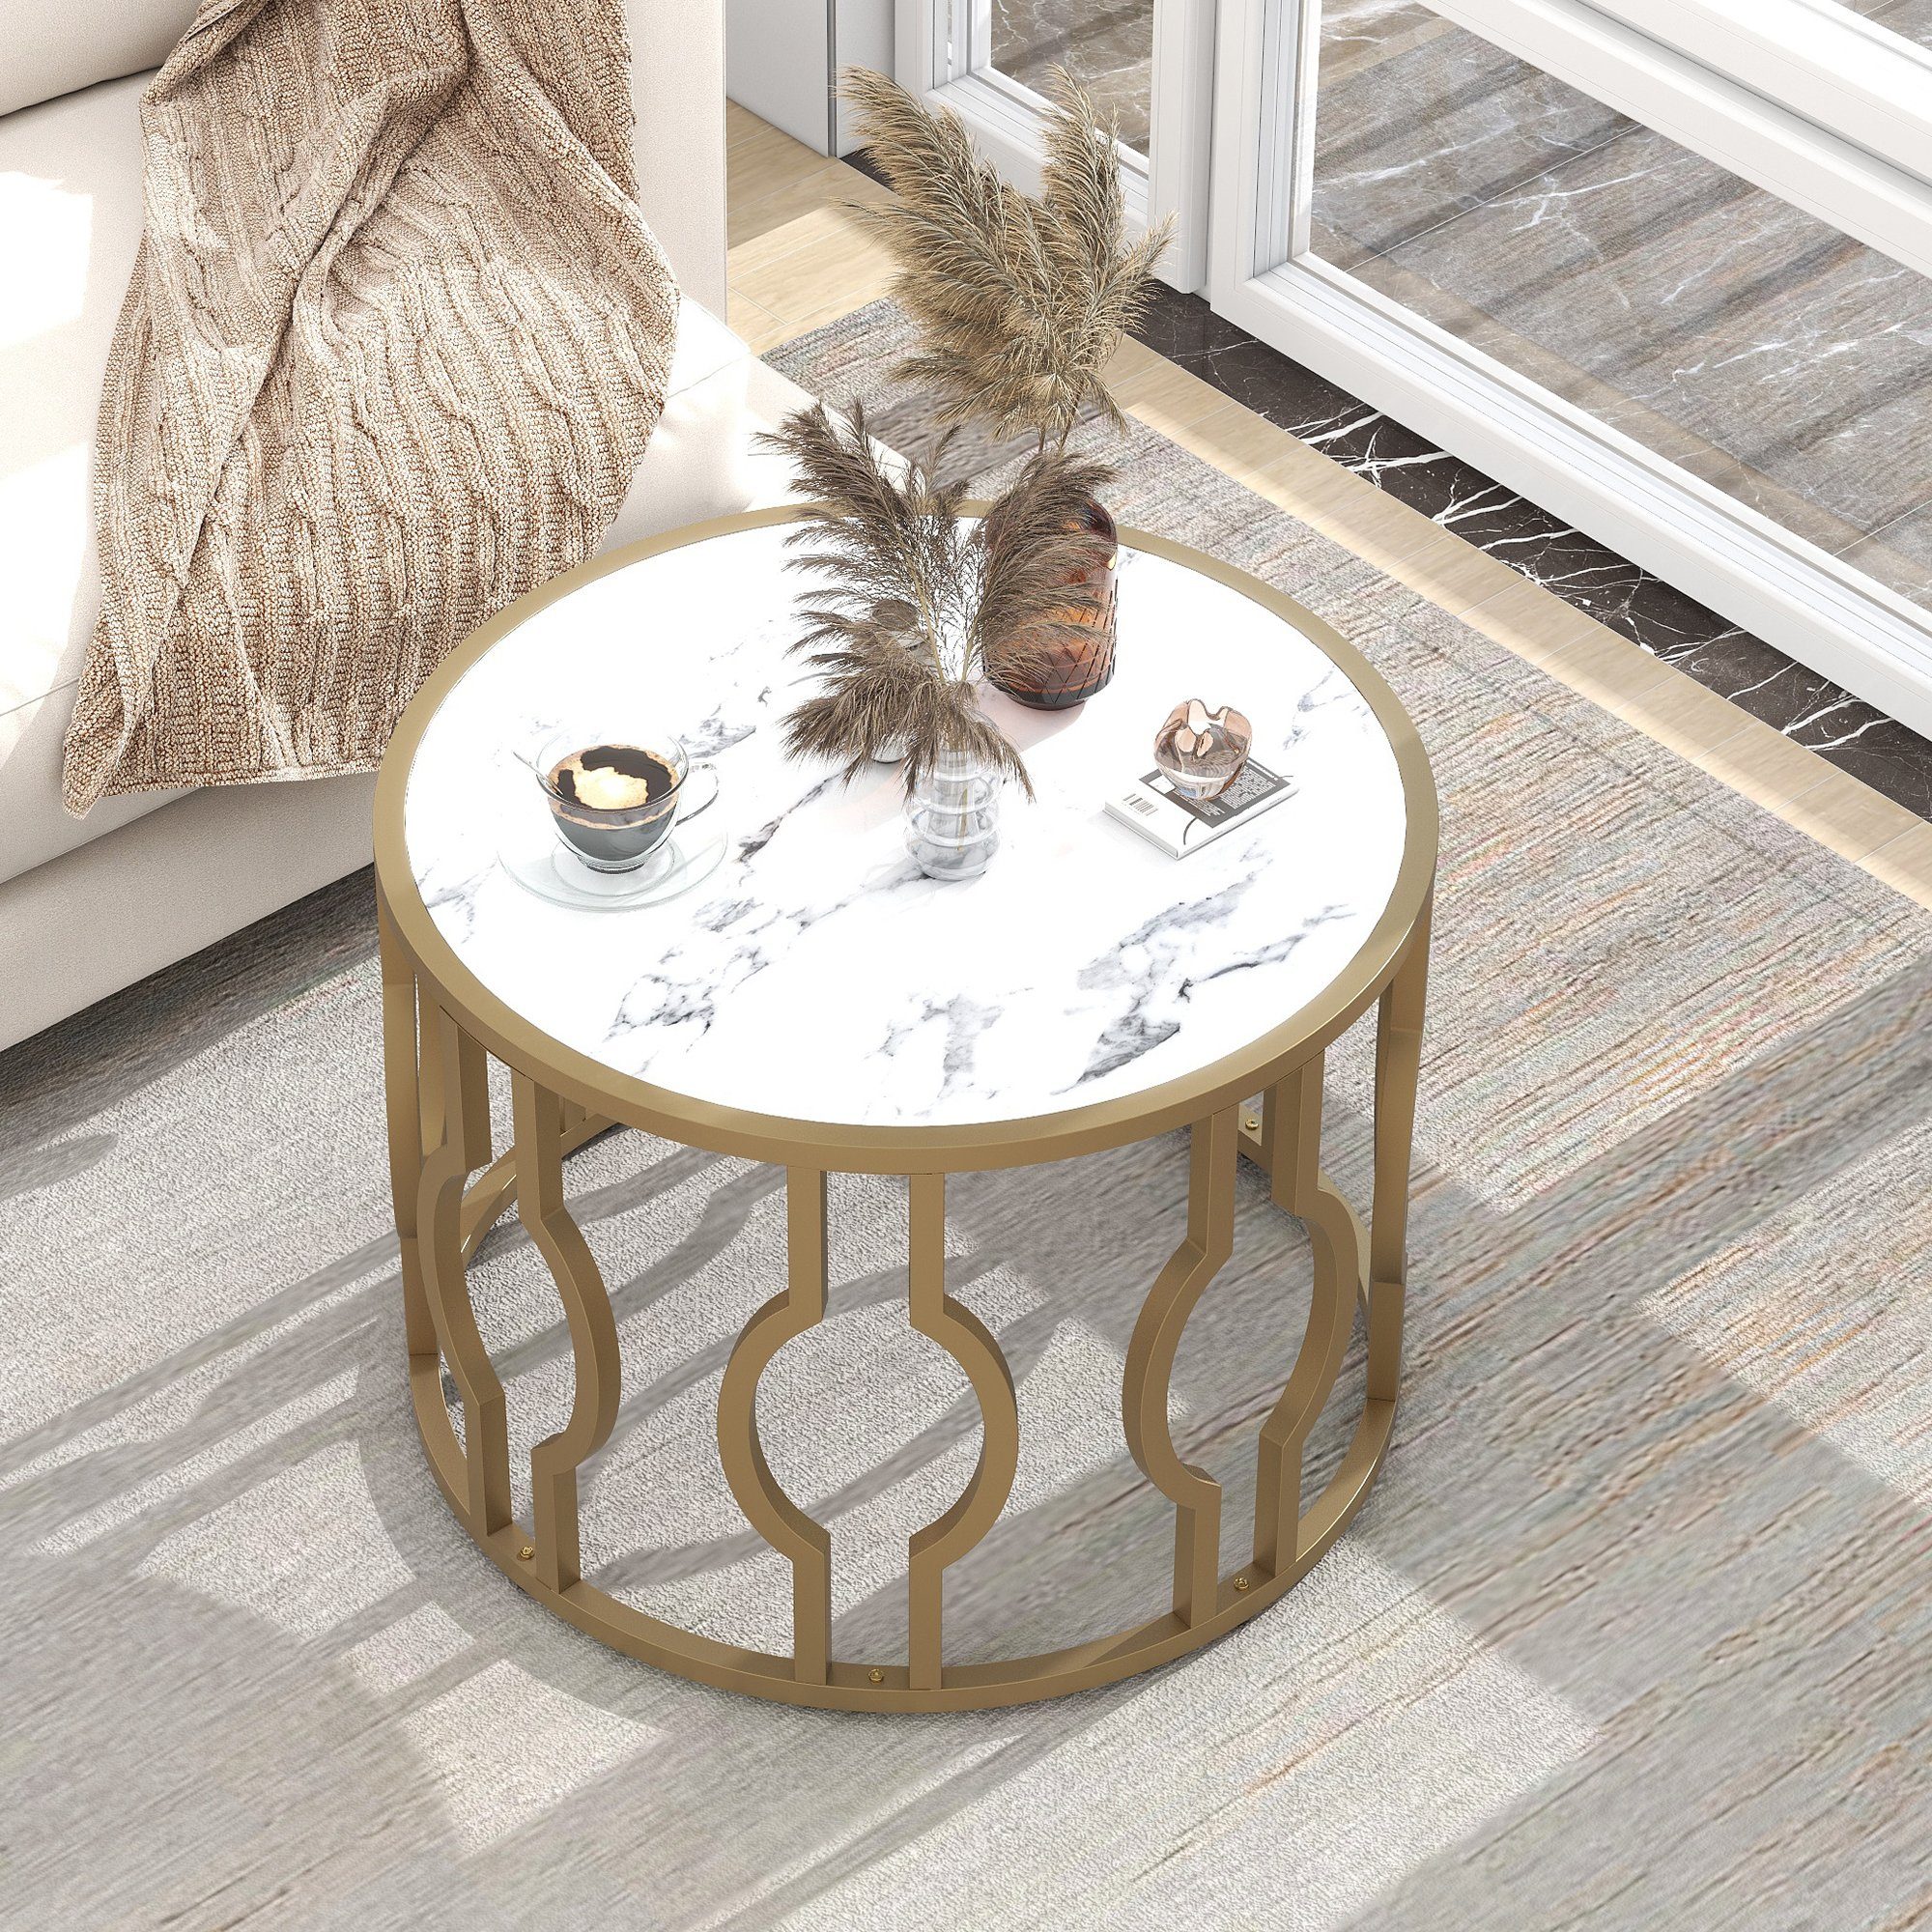 Rund Marmoroptik OKWISH Tisch golden Sofatisch Metallrahmen Beistelltisch 70*46.5cm), Couchtisch weißes mit Wohnzimmer Beistelltisch (Mamormuster